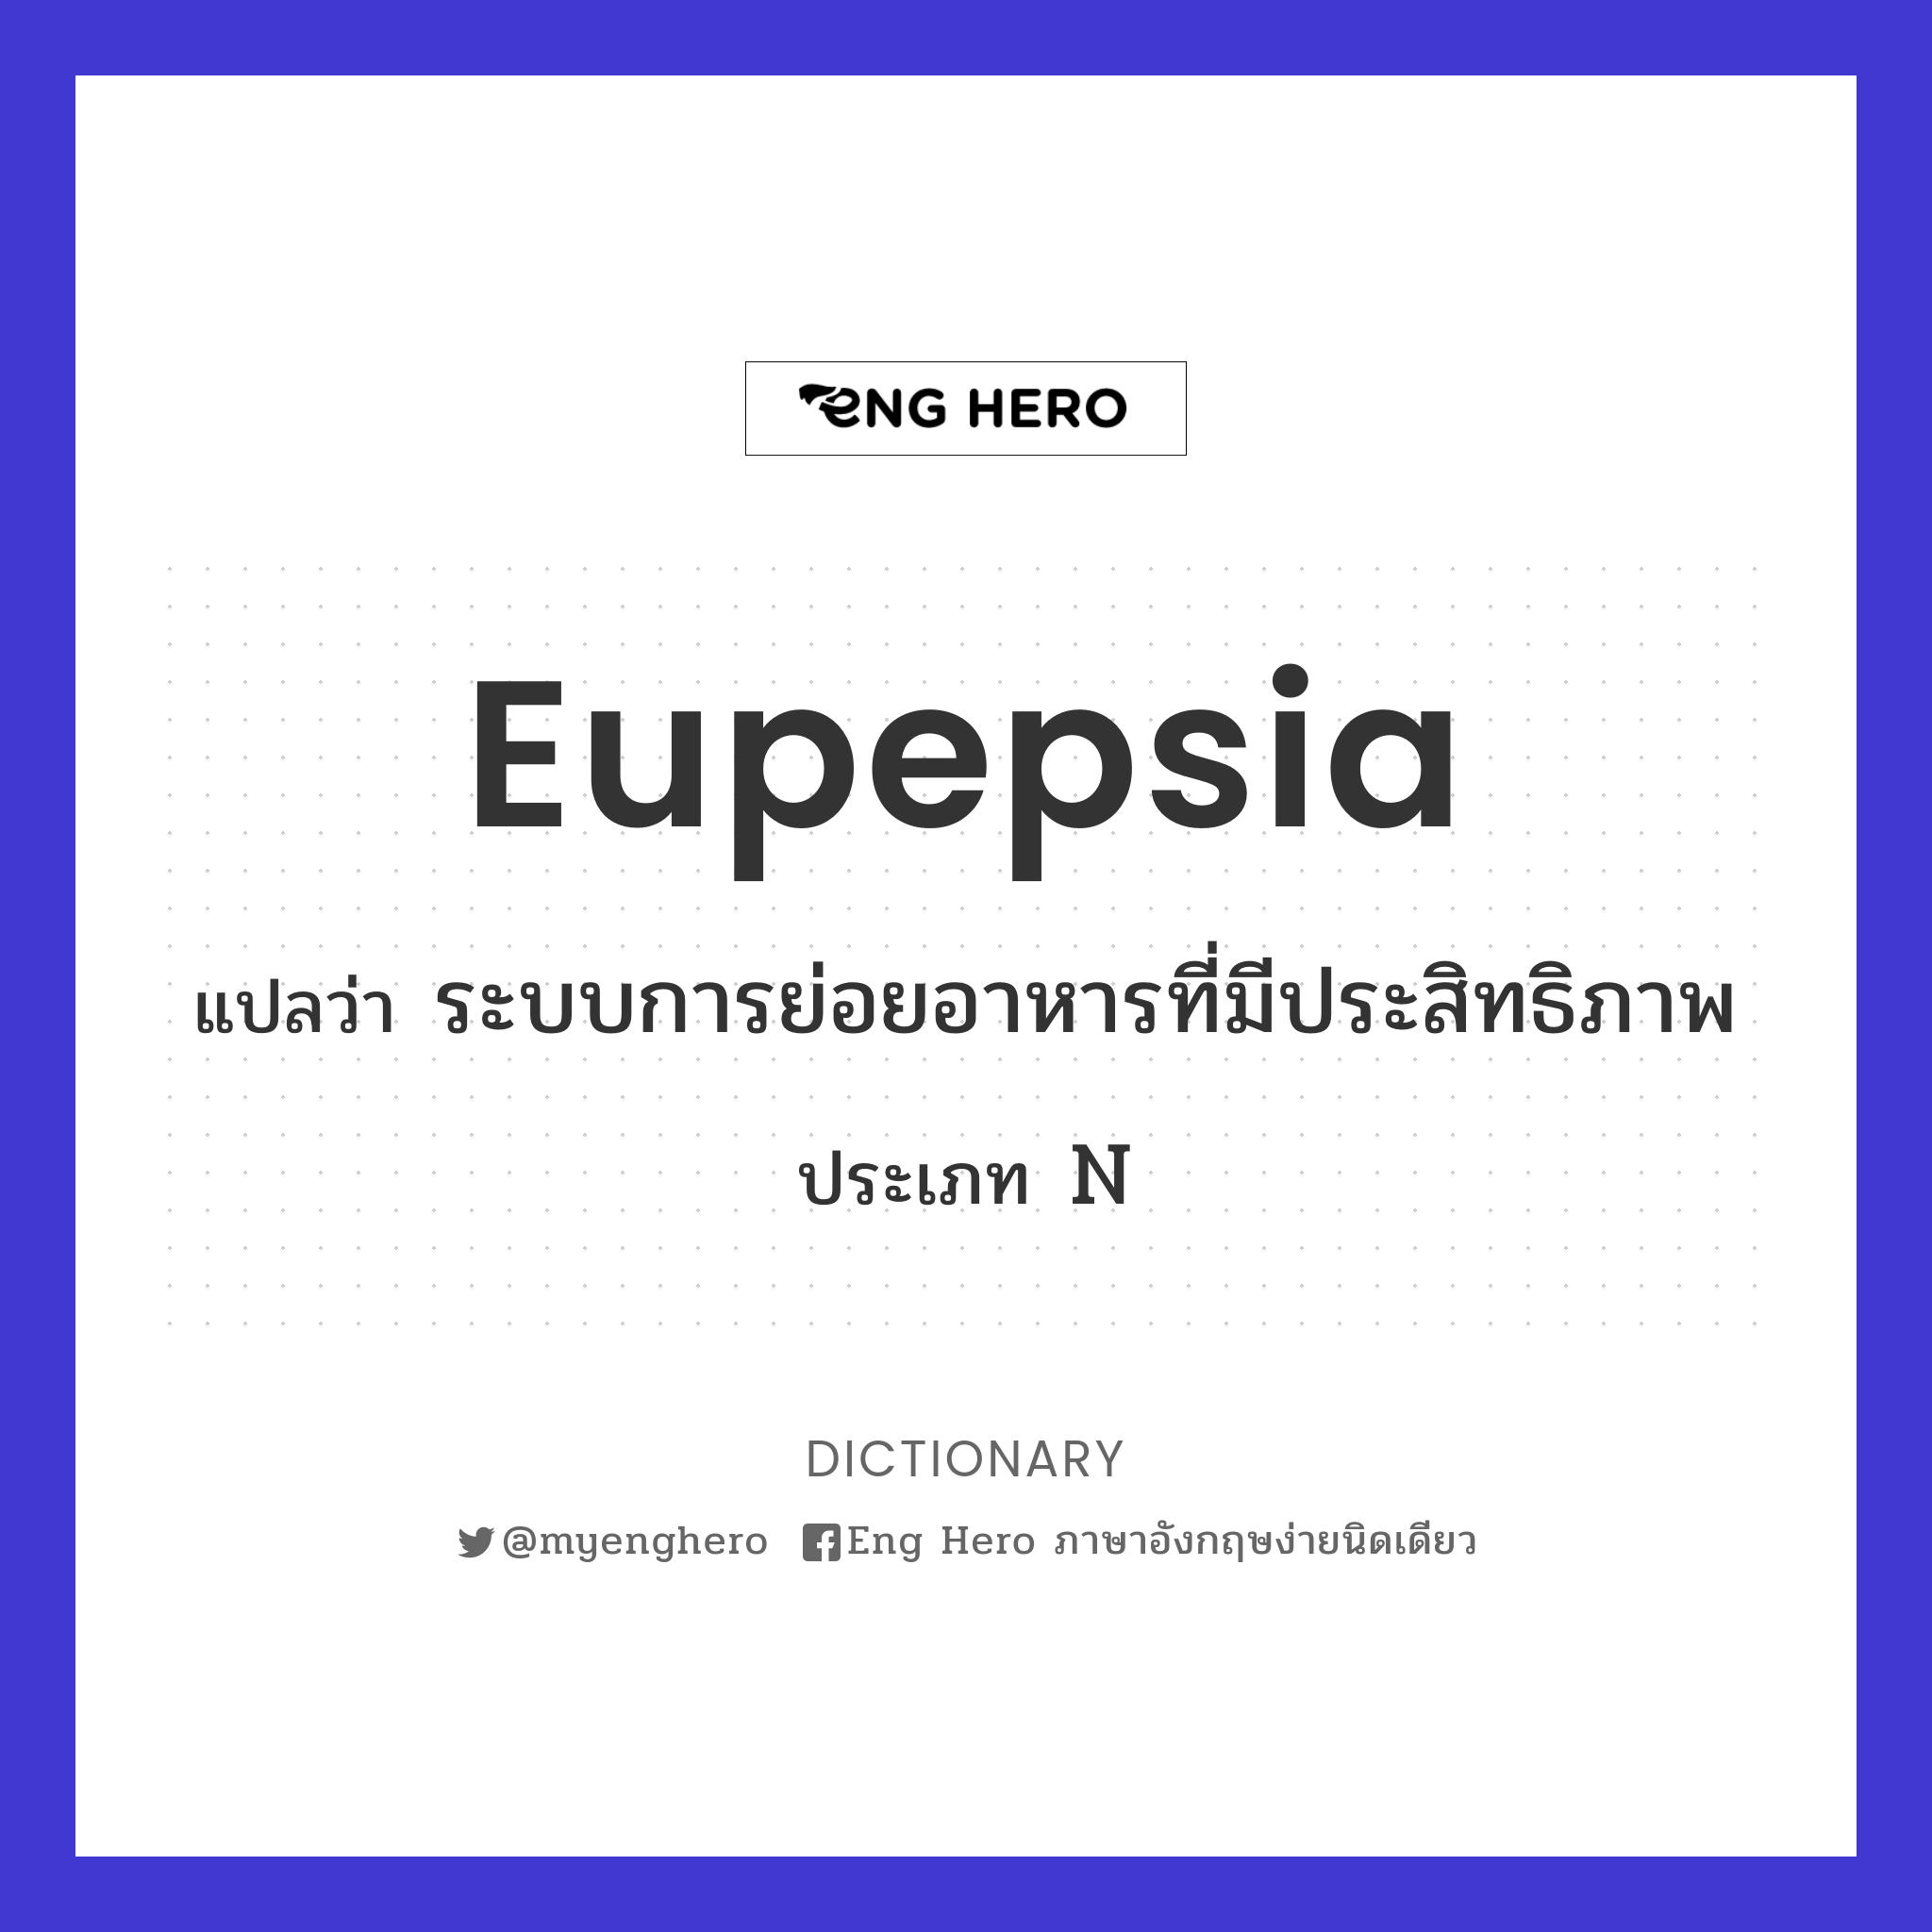 eupepsia